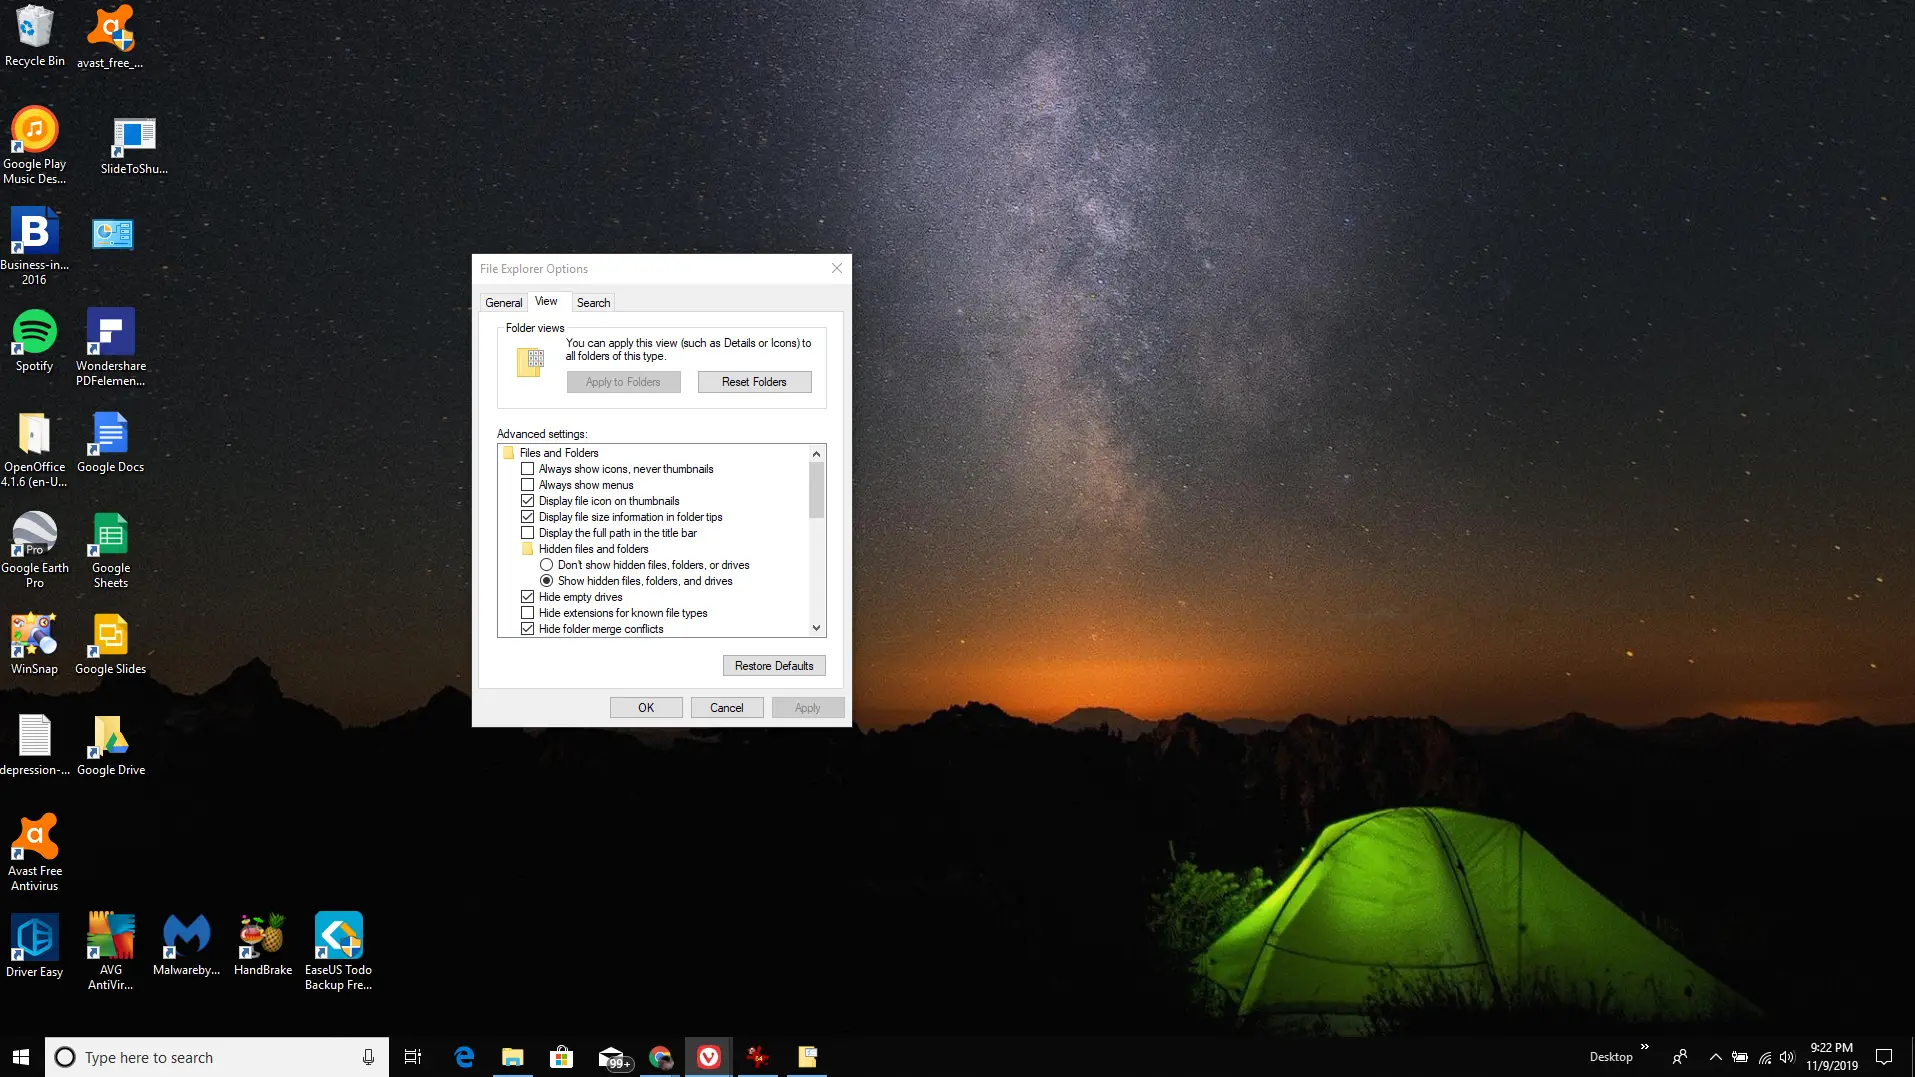 Captura de tela das opções do File Explorer no Windows 10